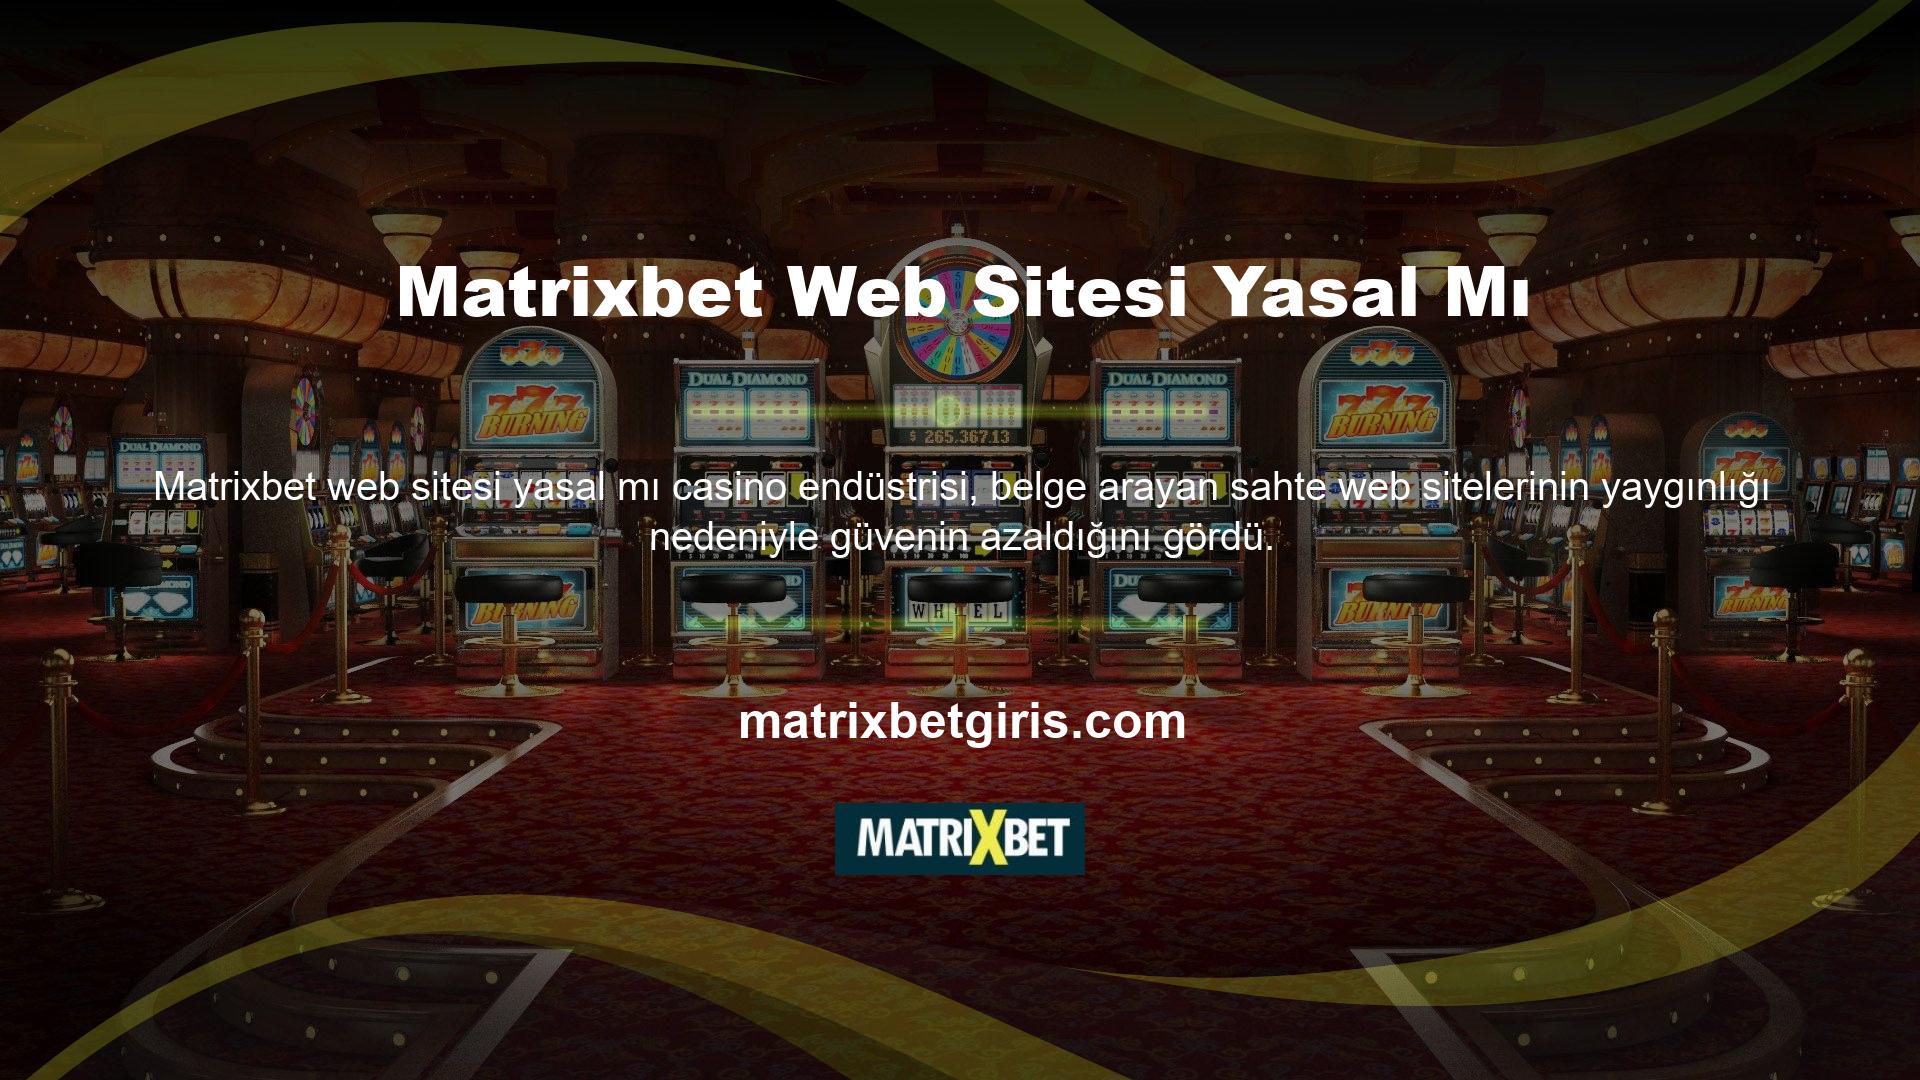 Matrixbet web sitesi, müşterilerin herhangi bir kupon zorunluluğu olmadan para yatırma ve çekme olanağı sağlar